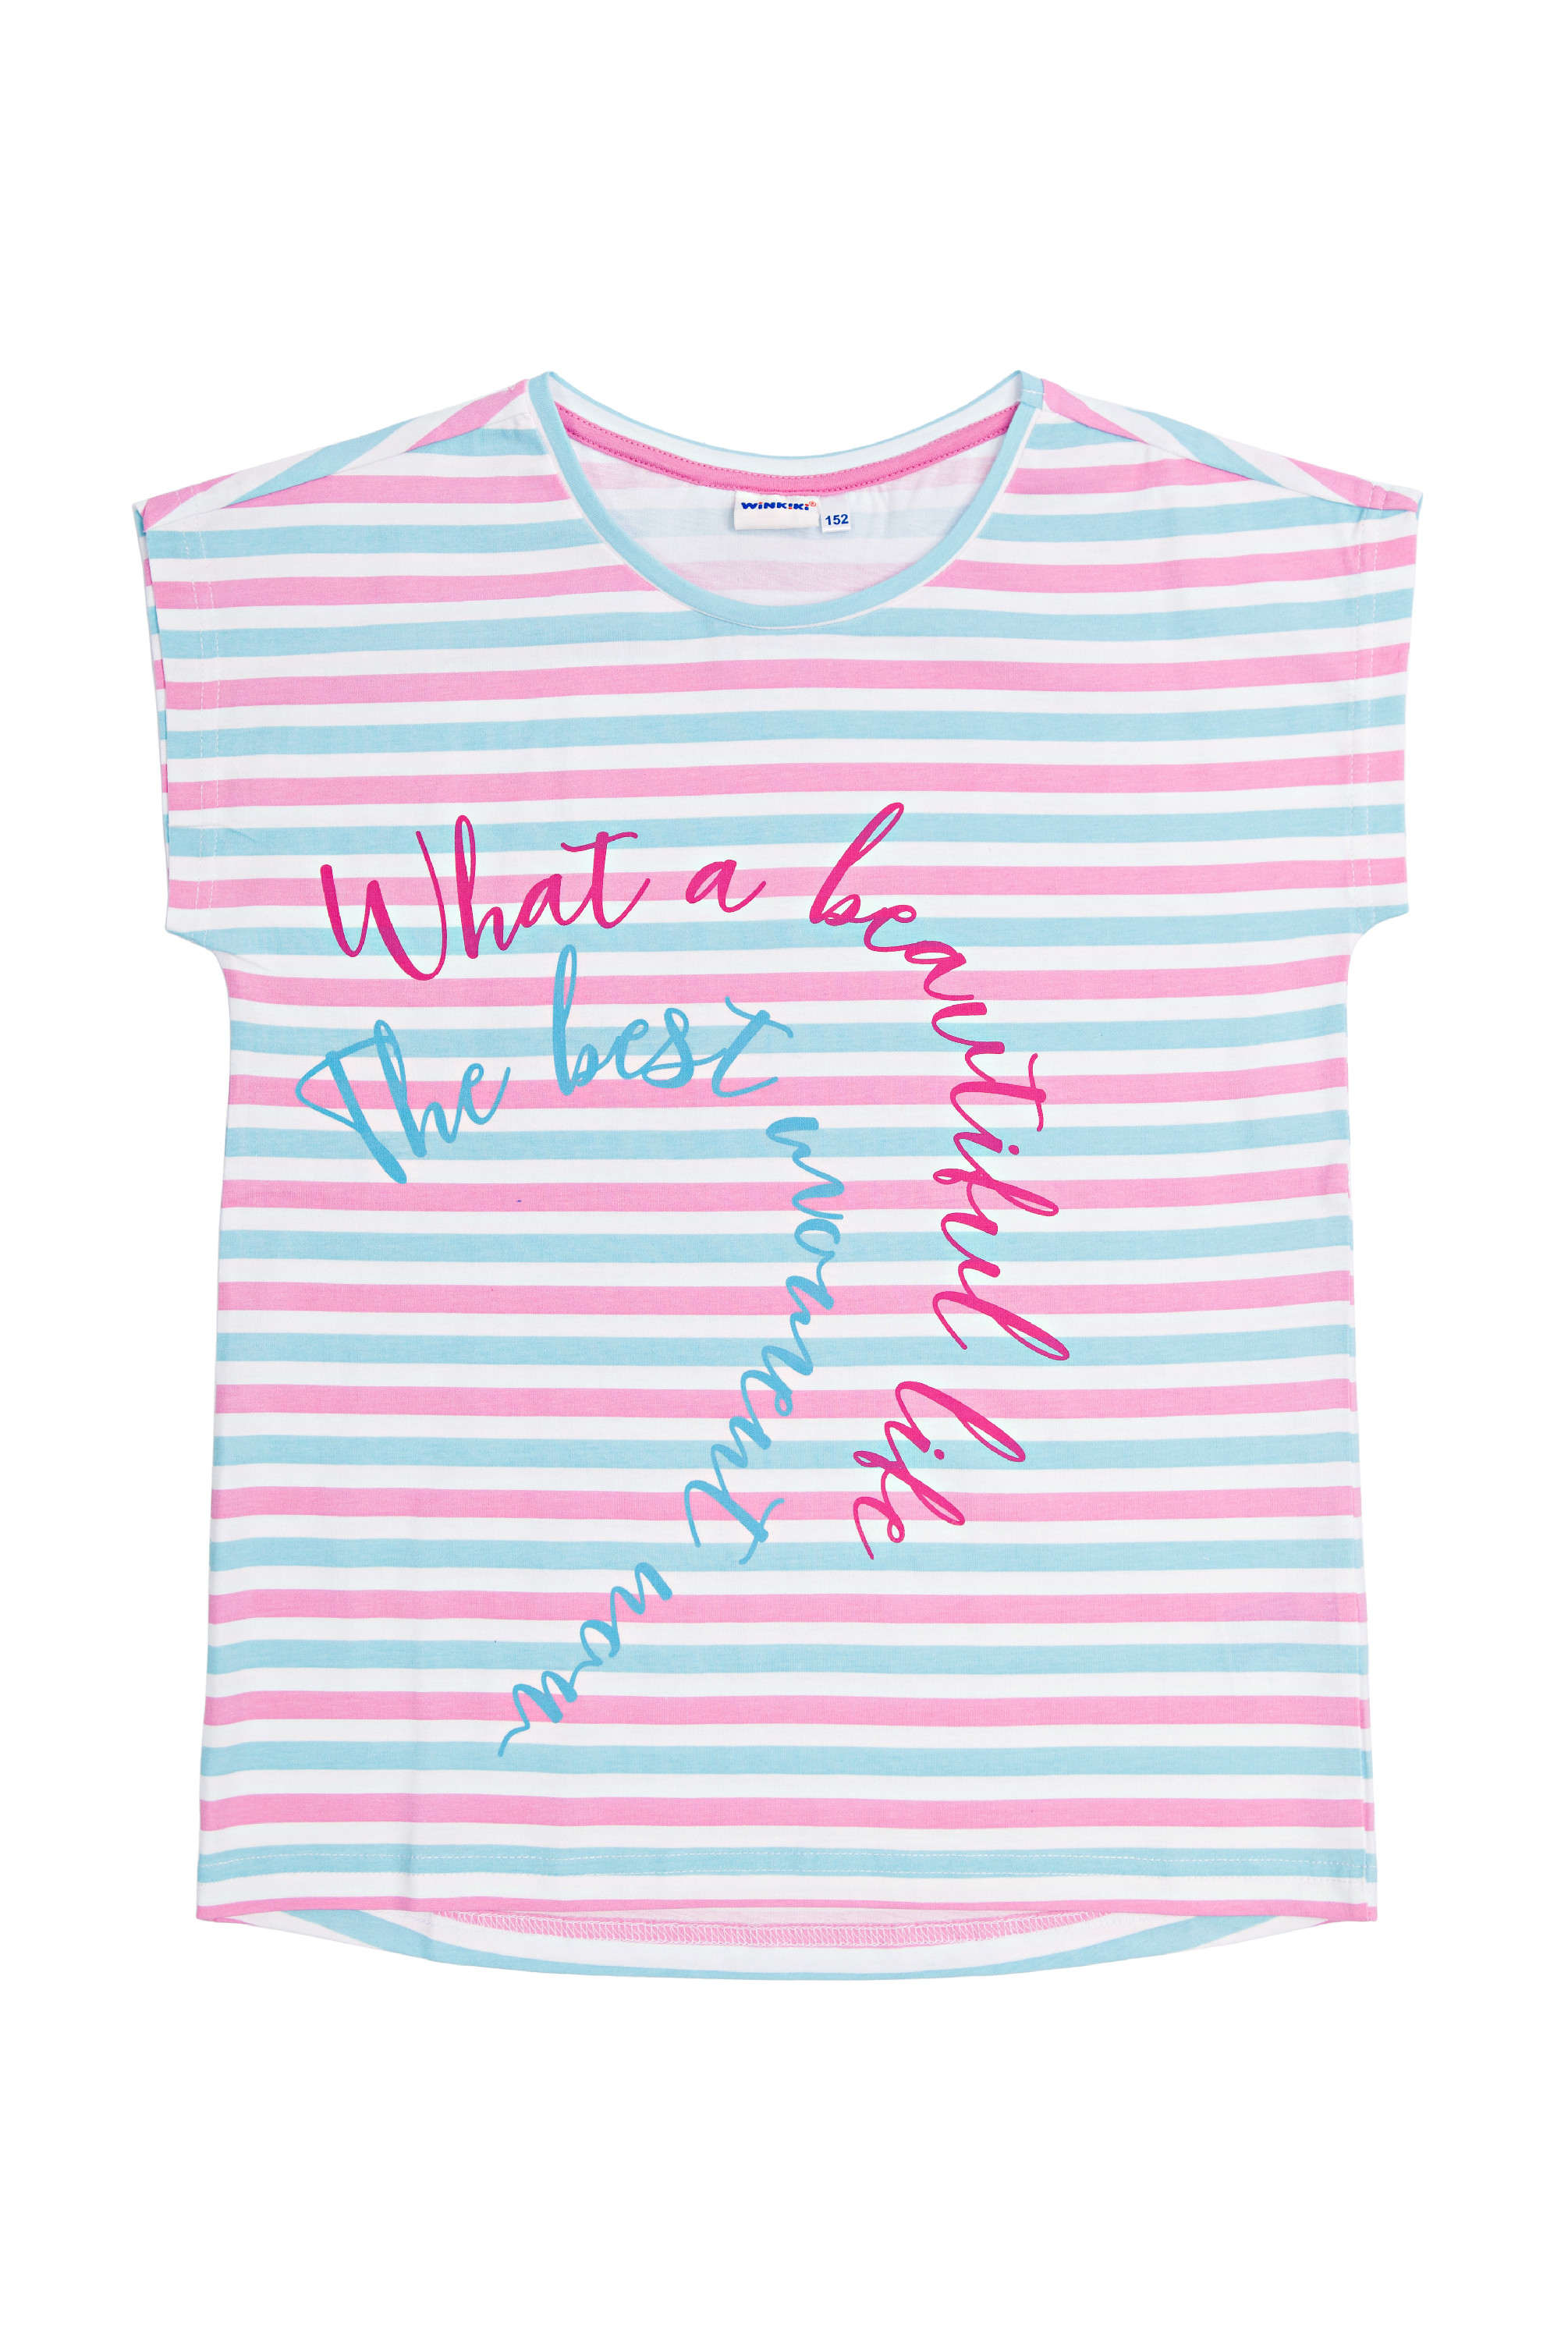 Dívčí triko - Winkiki WTG 01799, růžová / proužek Barva: Růžová, Velikost: 152